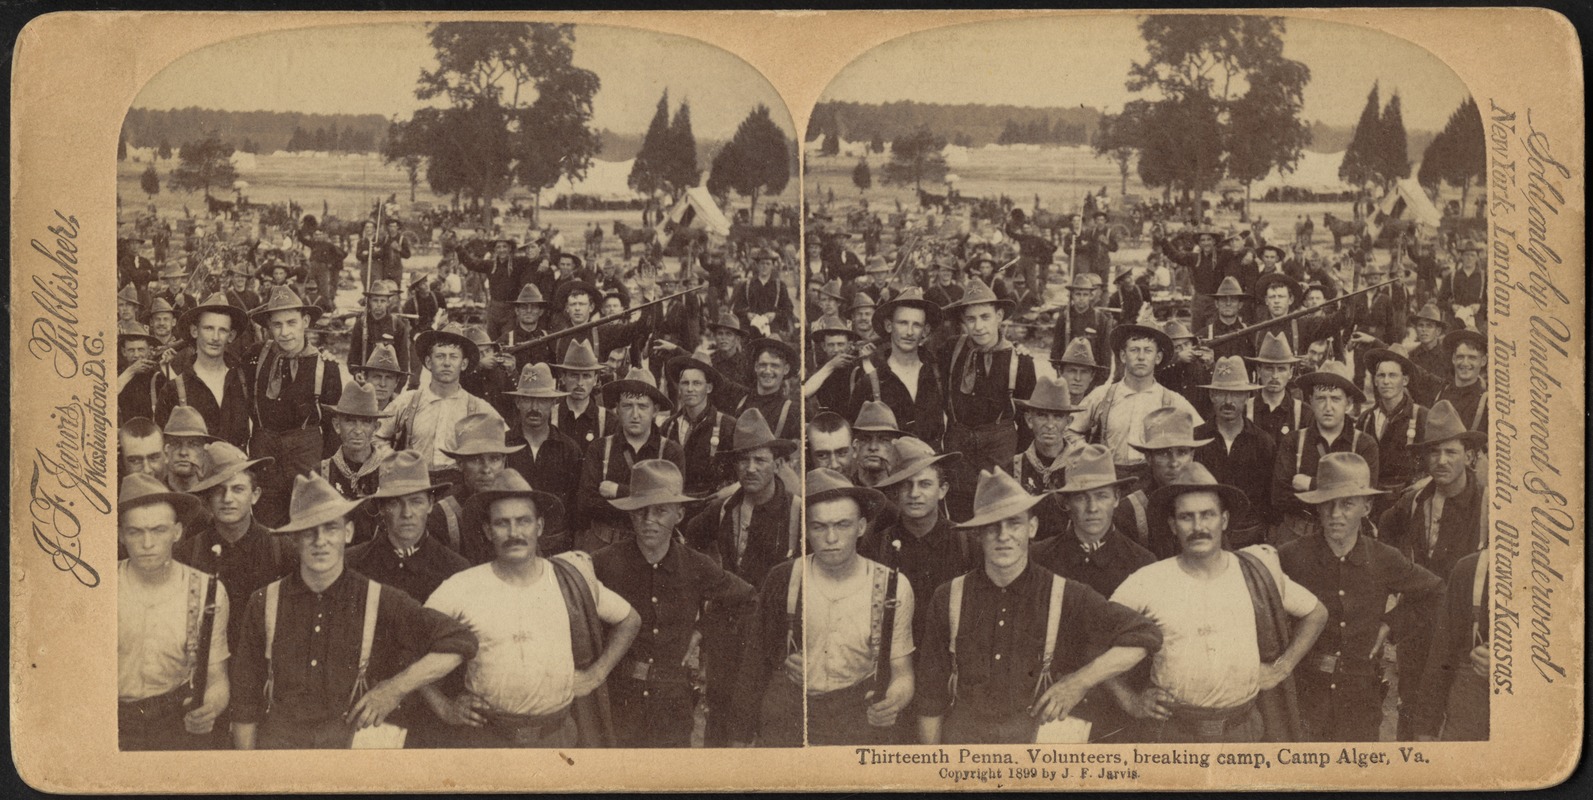 Thirteenth Penna. Volunteers, breaking camp, Camp Alger, Va.